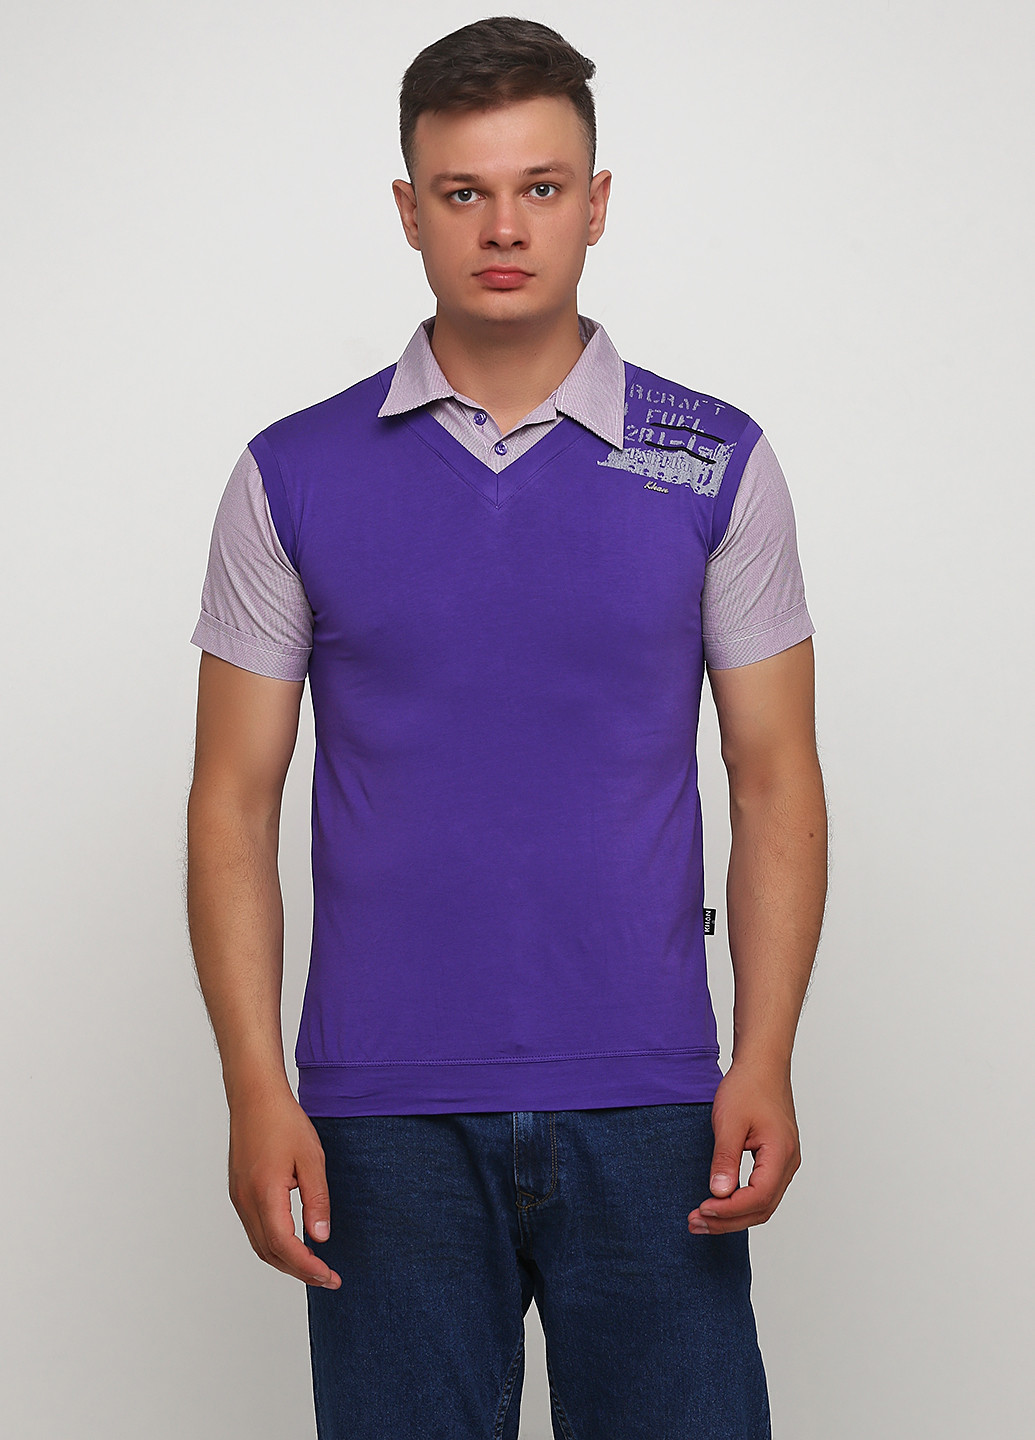 Фиолетовая футболка-рубашка для мужчин KHAN с надписью